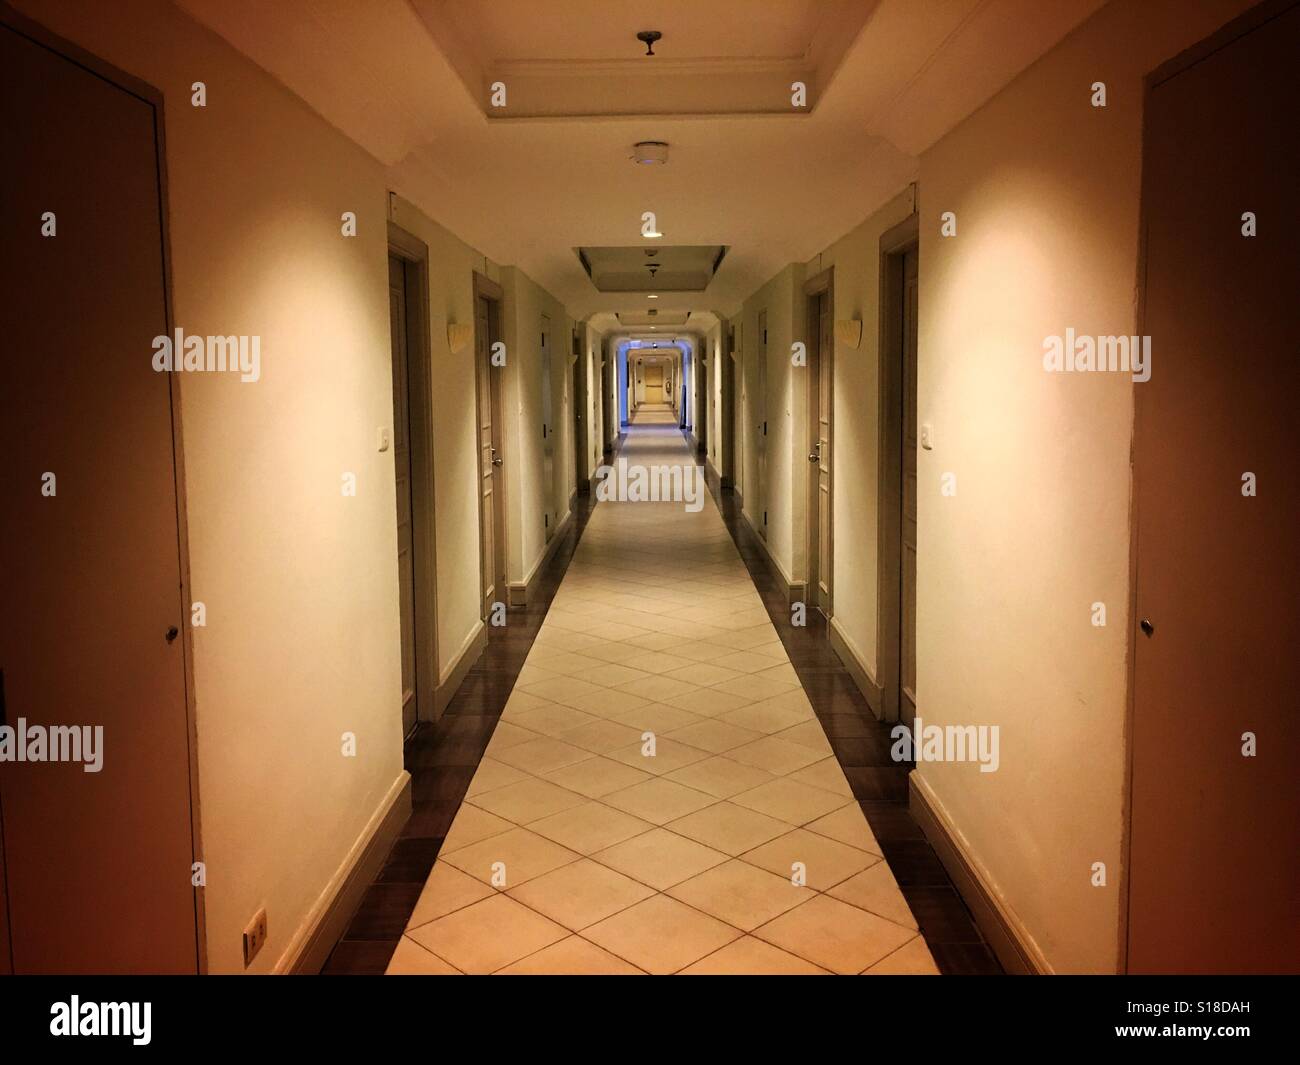 Empty hotel hallway Stock Photo